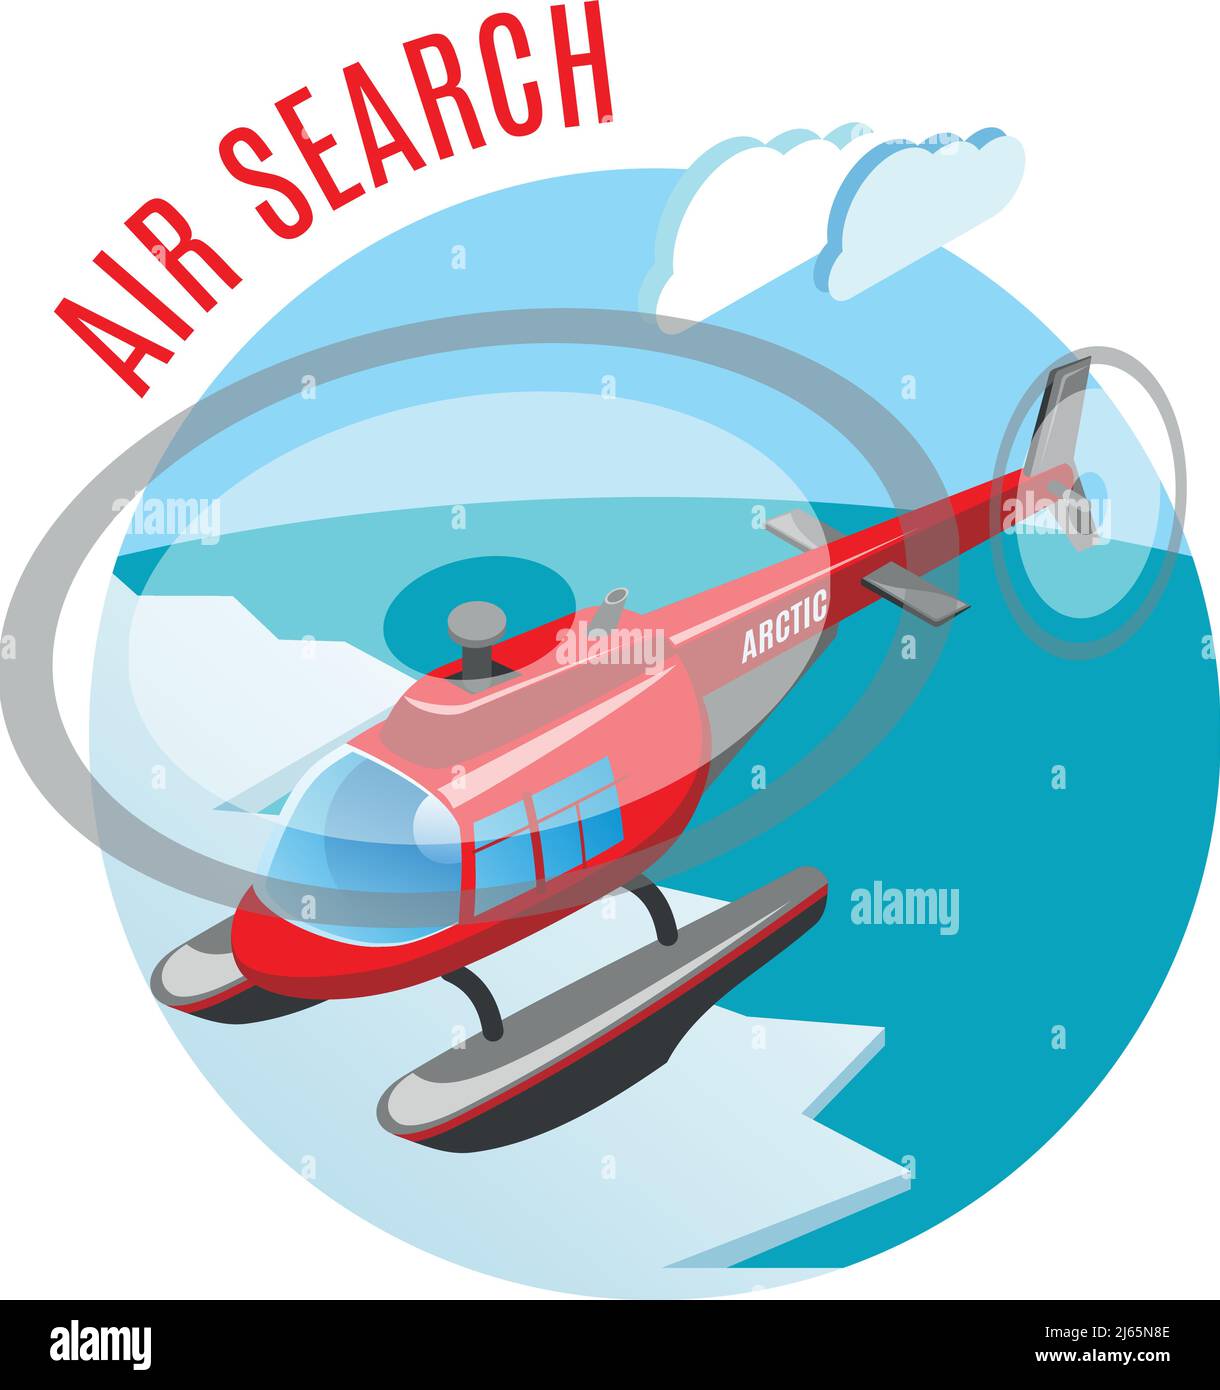 Recherche à partir de la composition isométrique ronde aérienne avec hélicoptère au-dessus de polaire illustration du vecteur océanique de la glace et de l'arctique Illustration de Vecteur